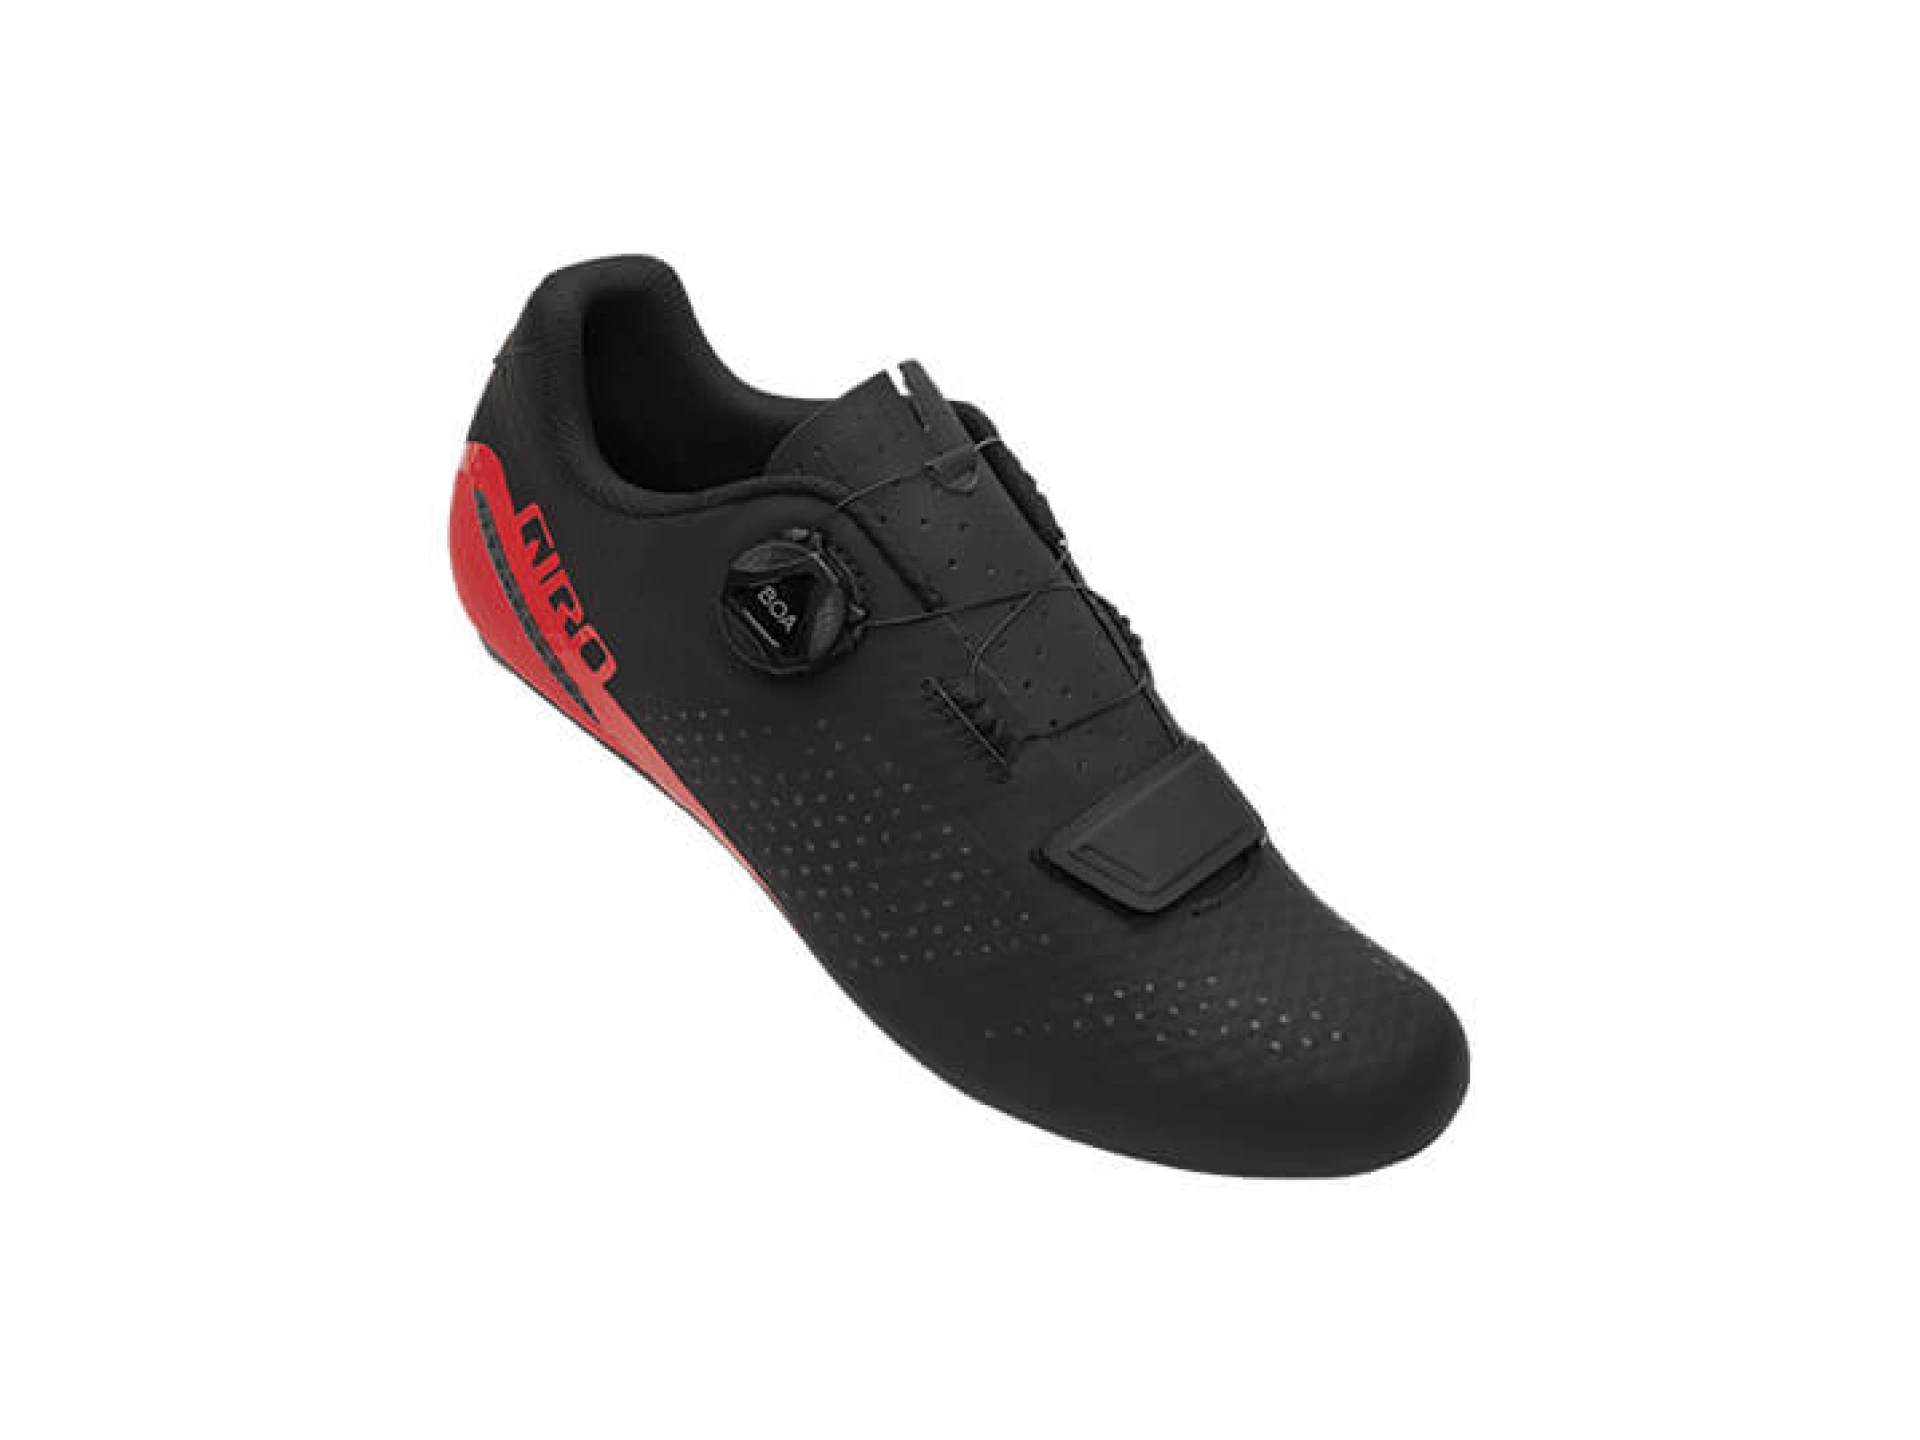 Giro Gf Cadet Spd Ayakkabı Siyah-Kırmızı 45 Numara